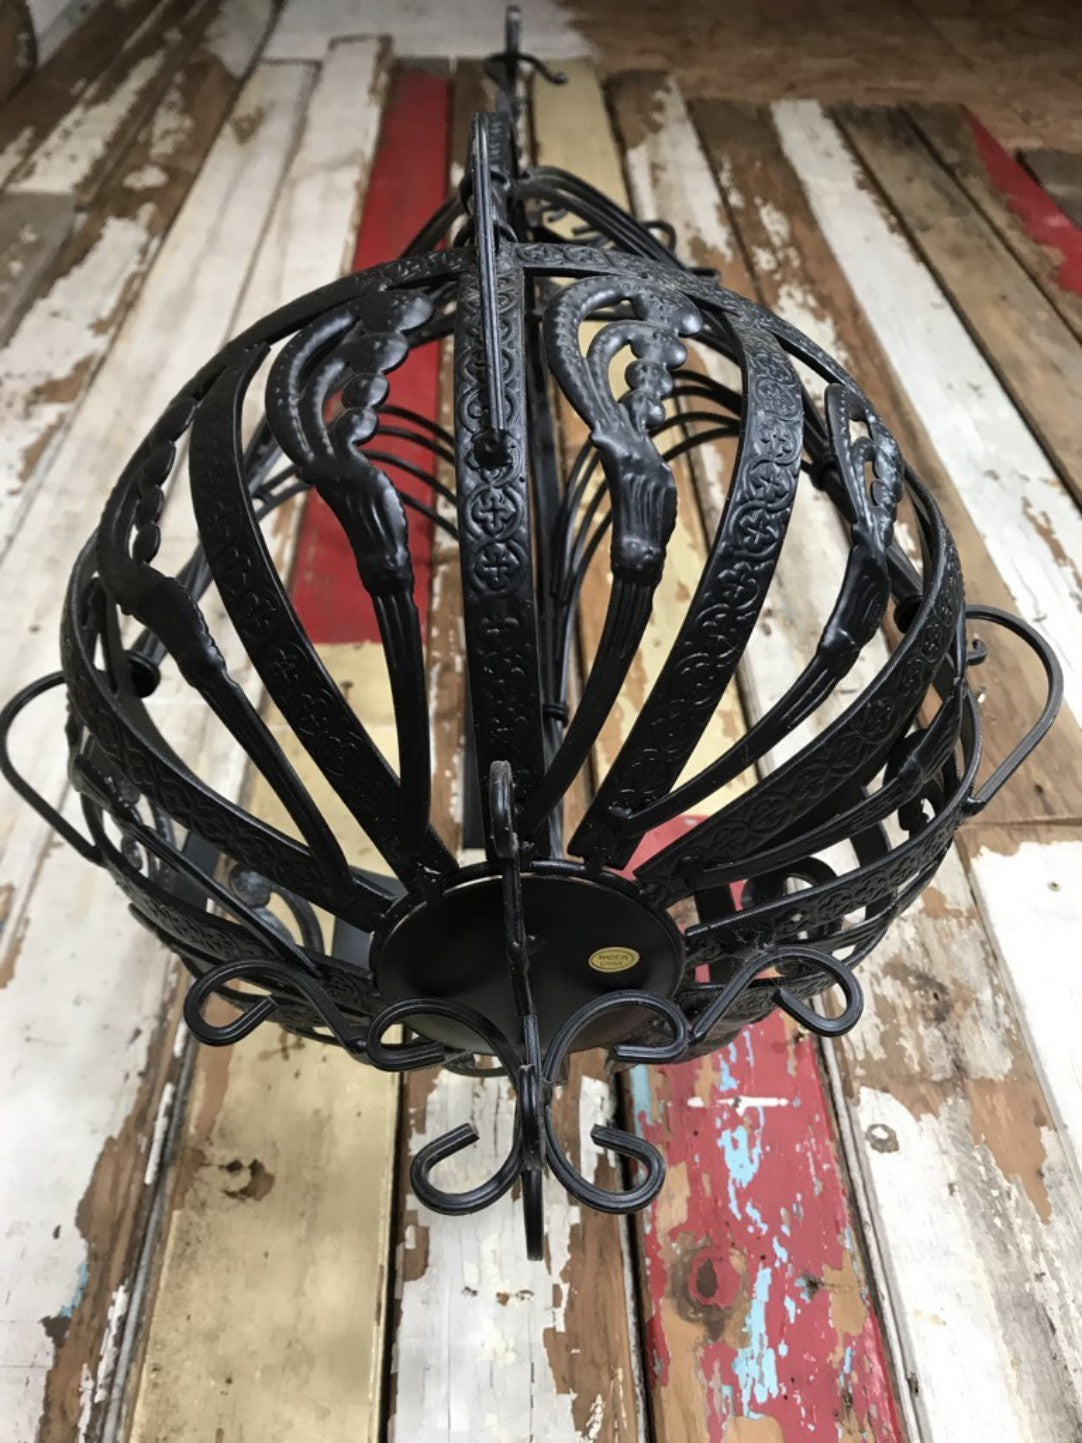 11 Small Black French Style Wrought Iron Hanging Basket New